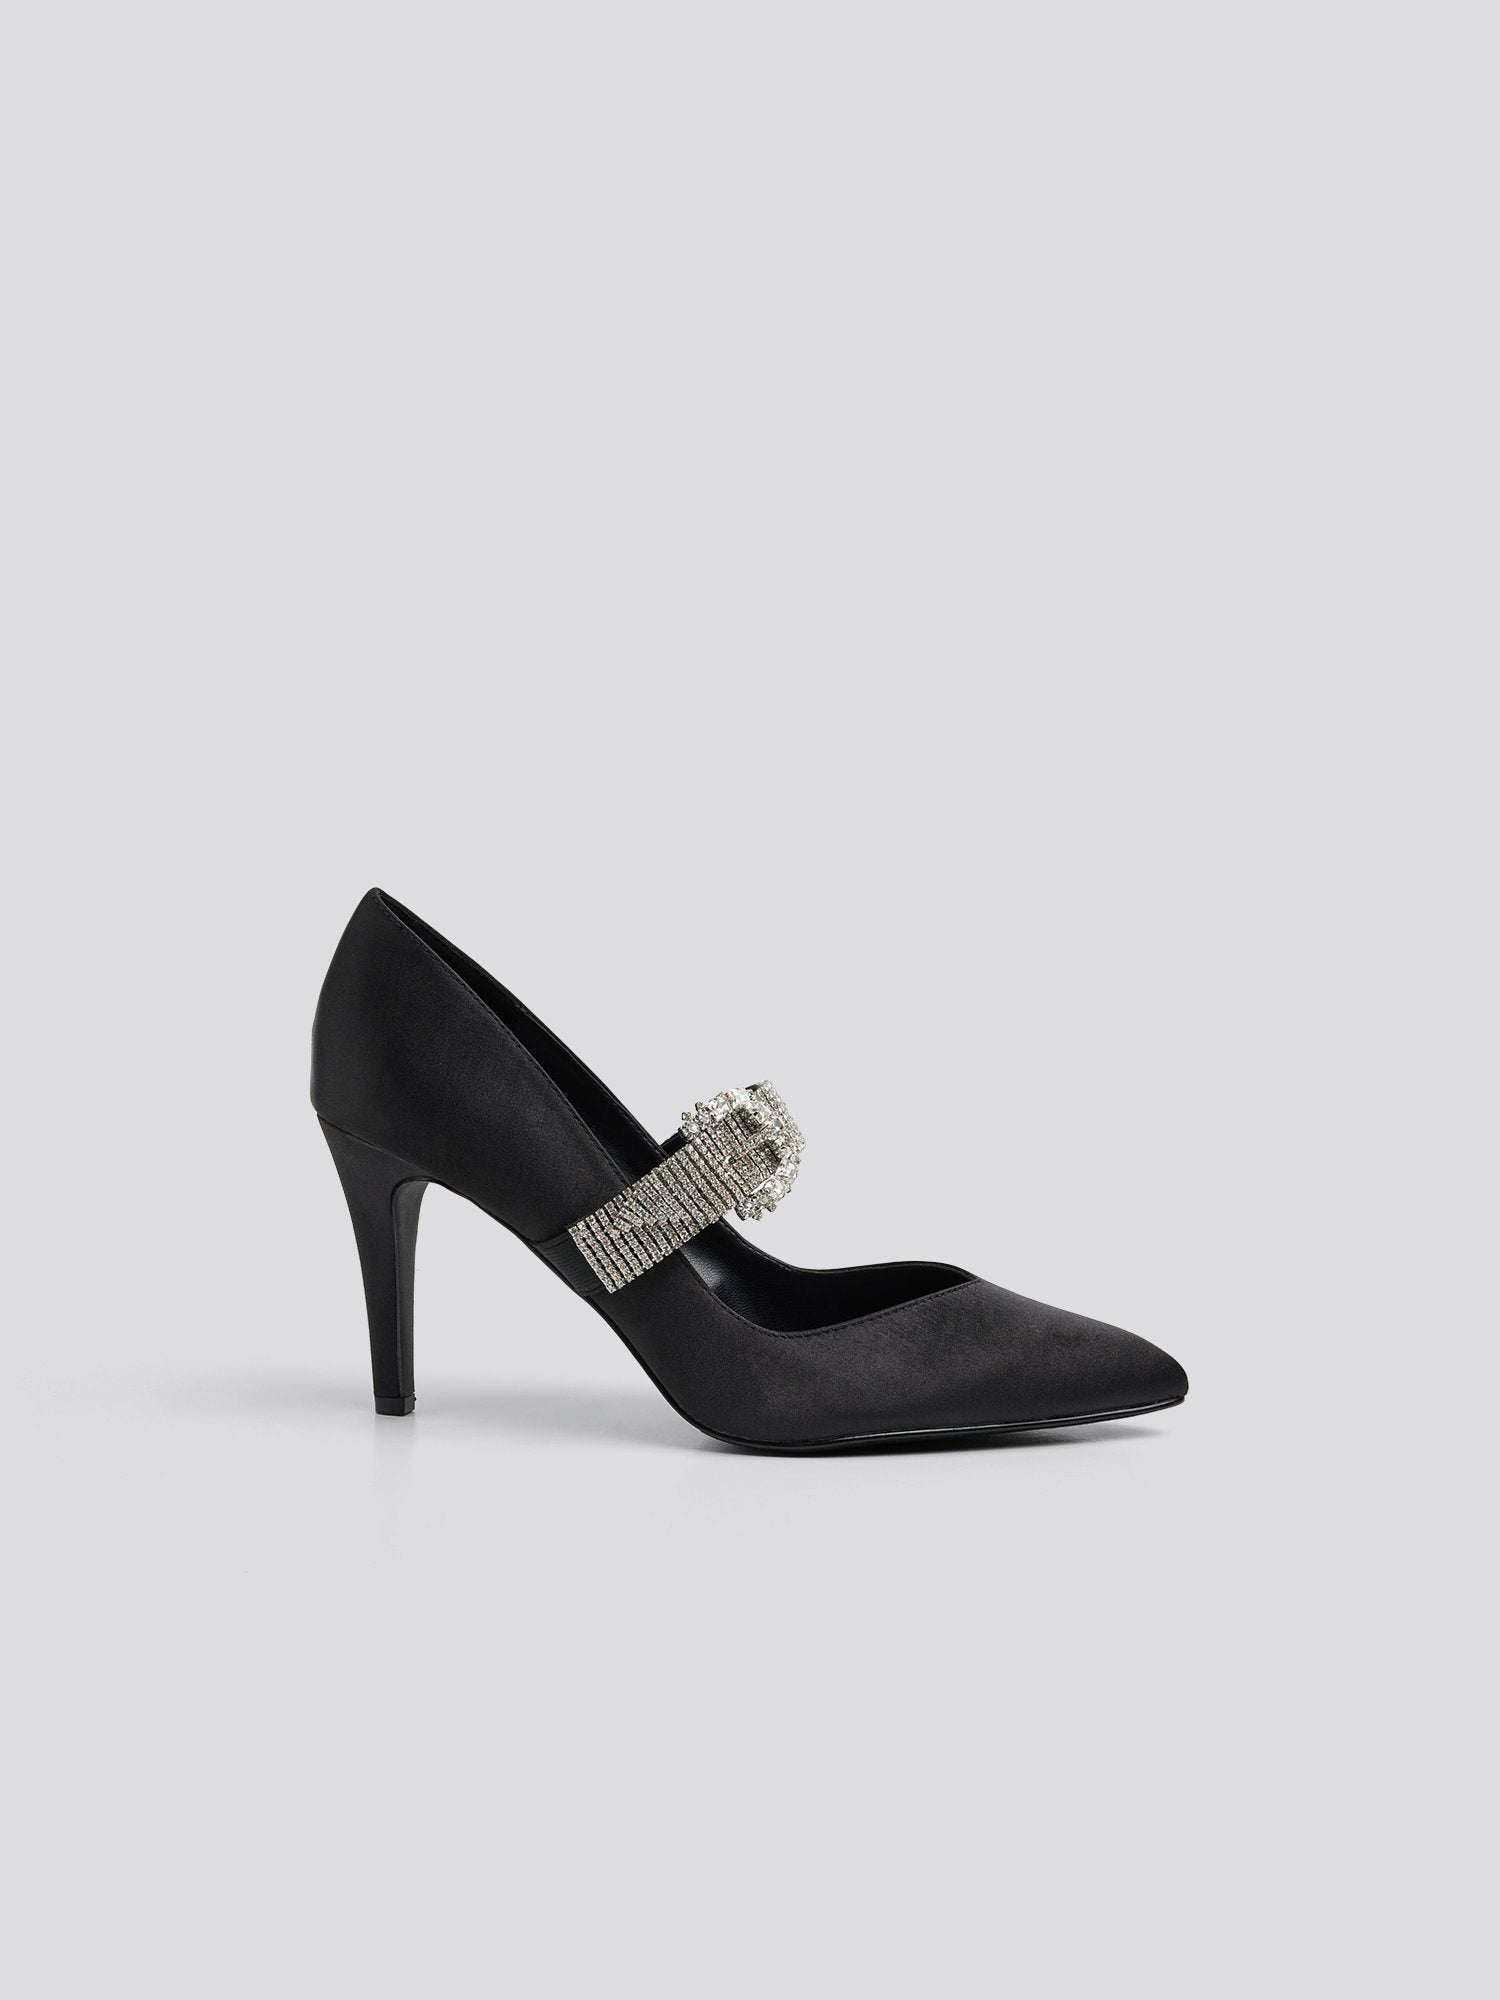 Plus Size Shoes: Flats, Heels & More | Avenue.com